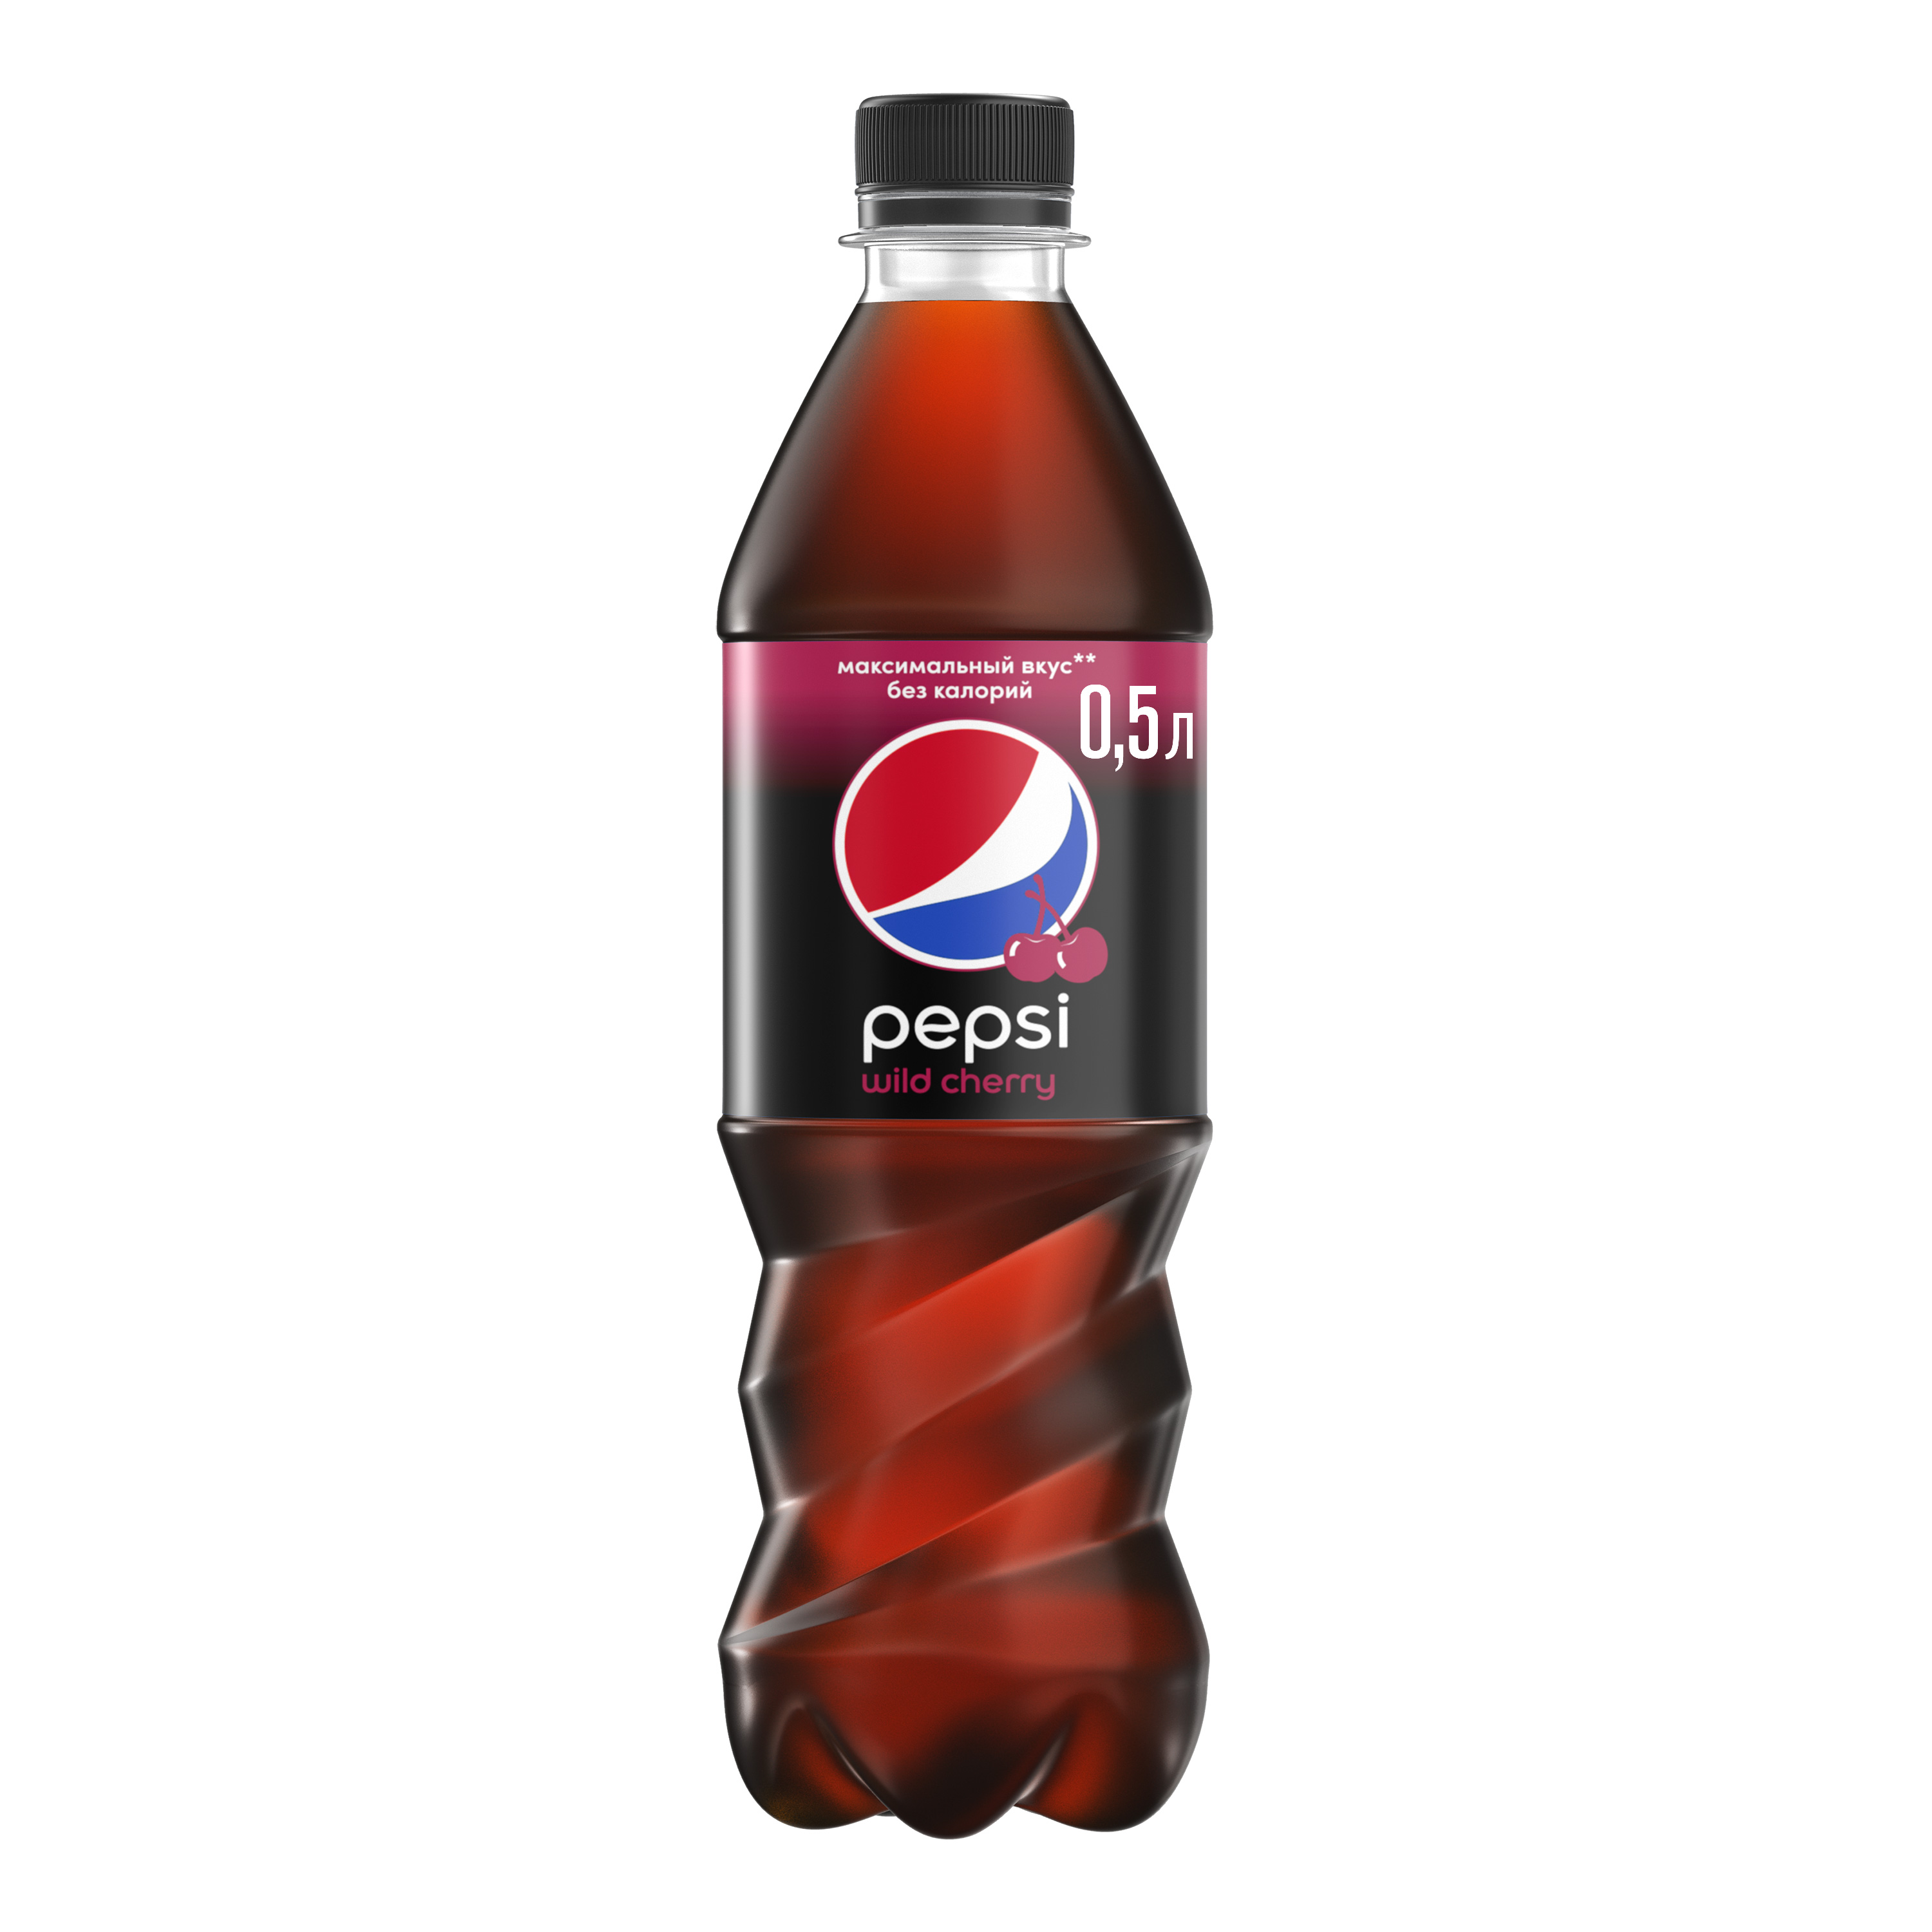 Напиток Pepsi wild cherry сильногазированный 0.5 л